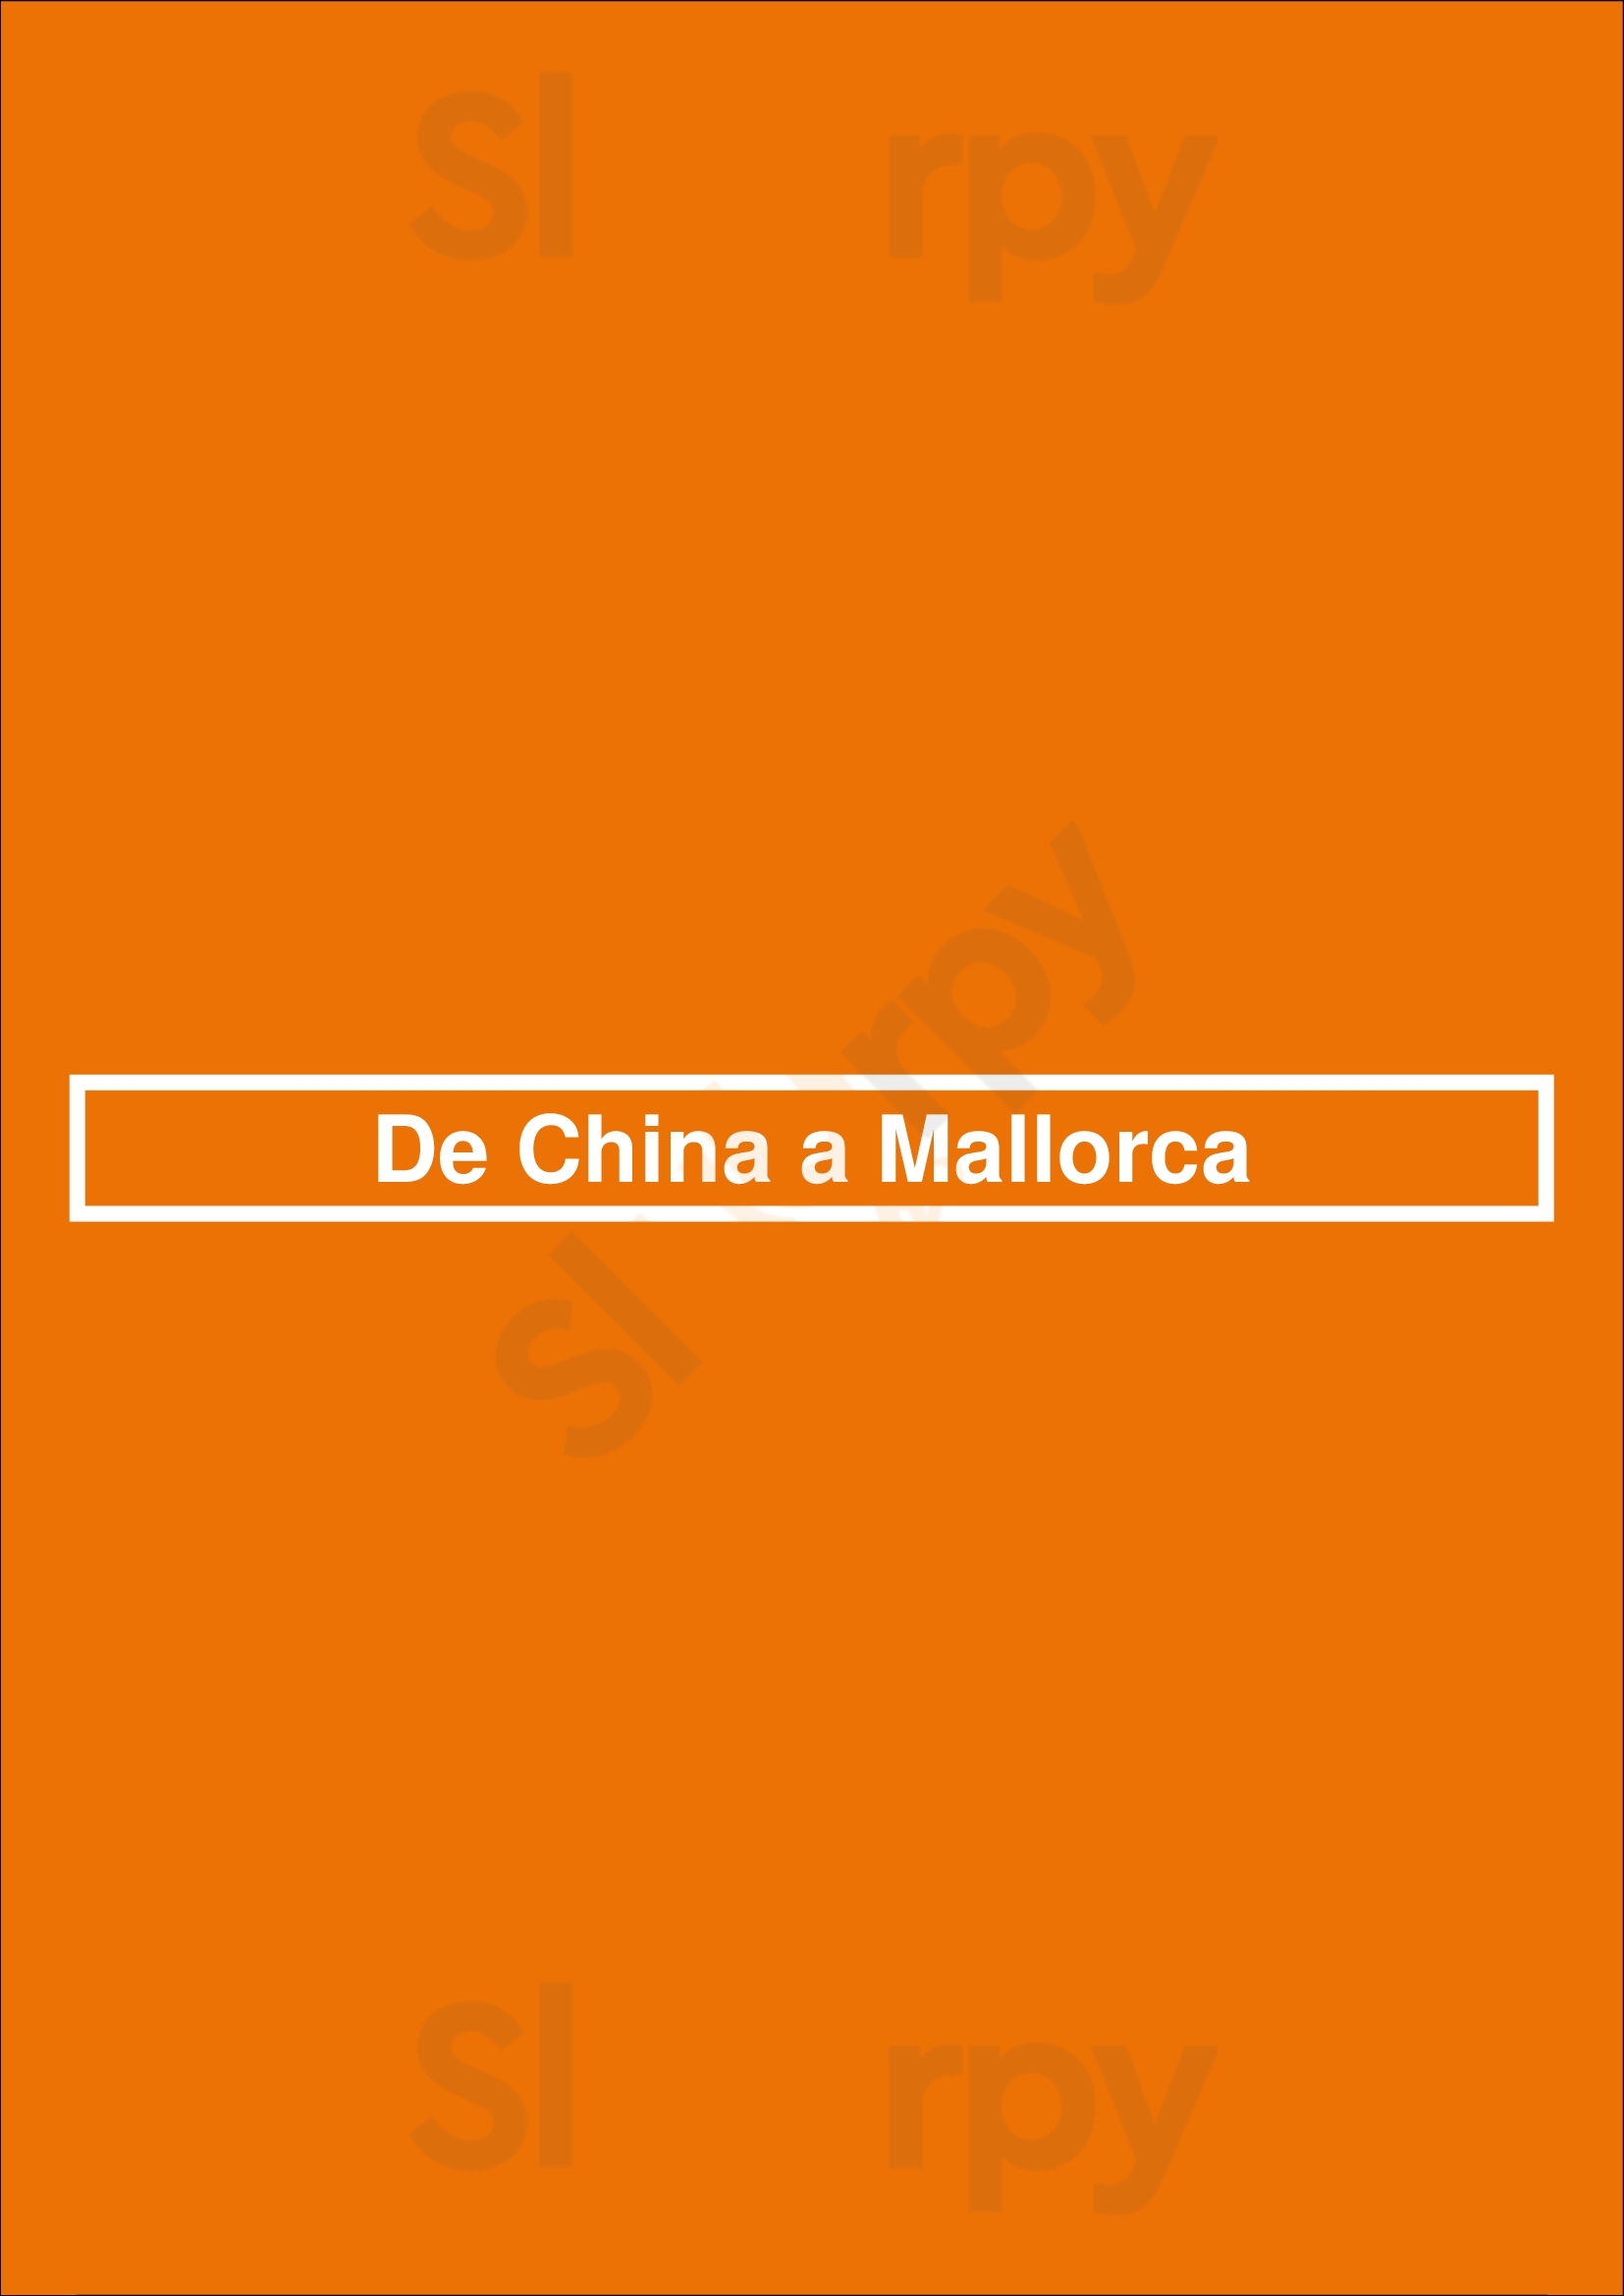 Restaurante De China A Mallorca Palma de Mallorca Menu - 1